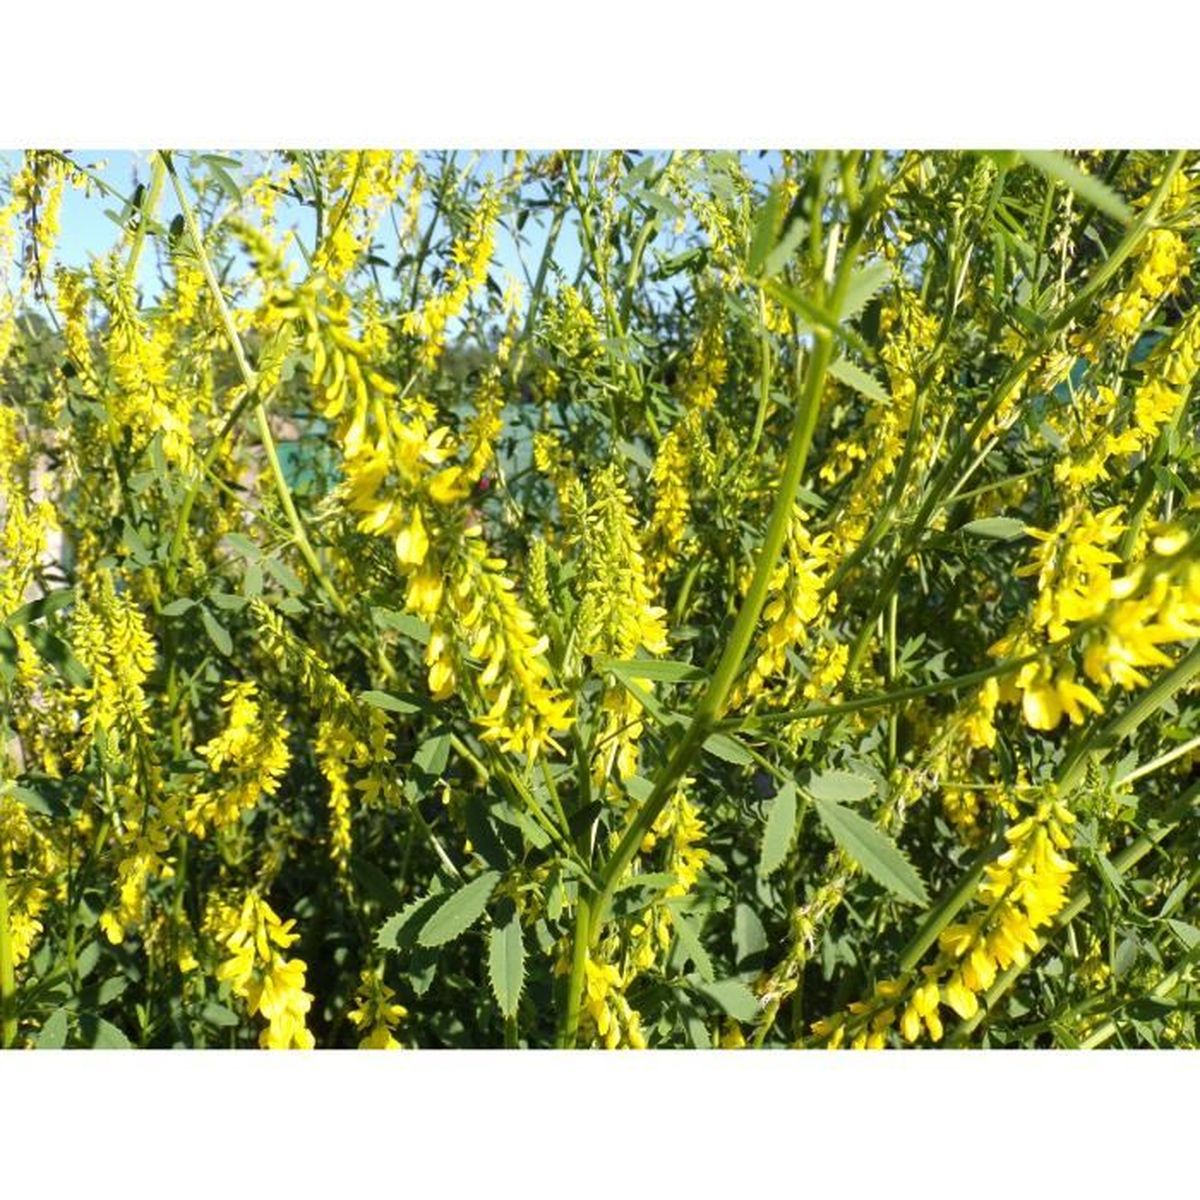 Engrais Vert - SEM05 Yellow Melilot - Melilotus Officinalis Melilot Jaune